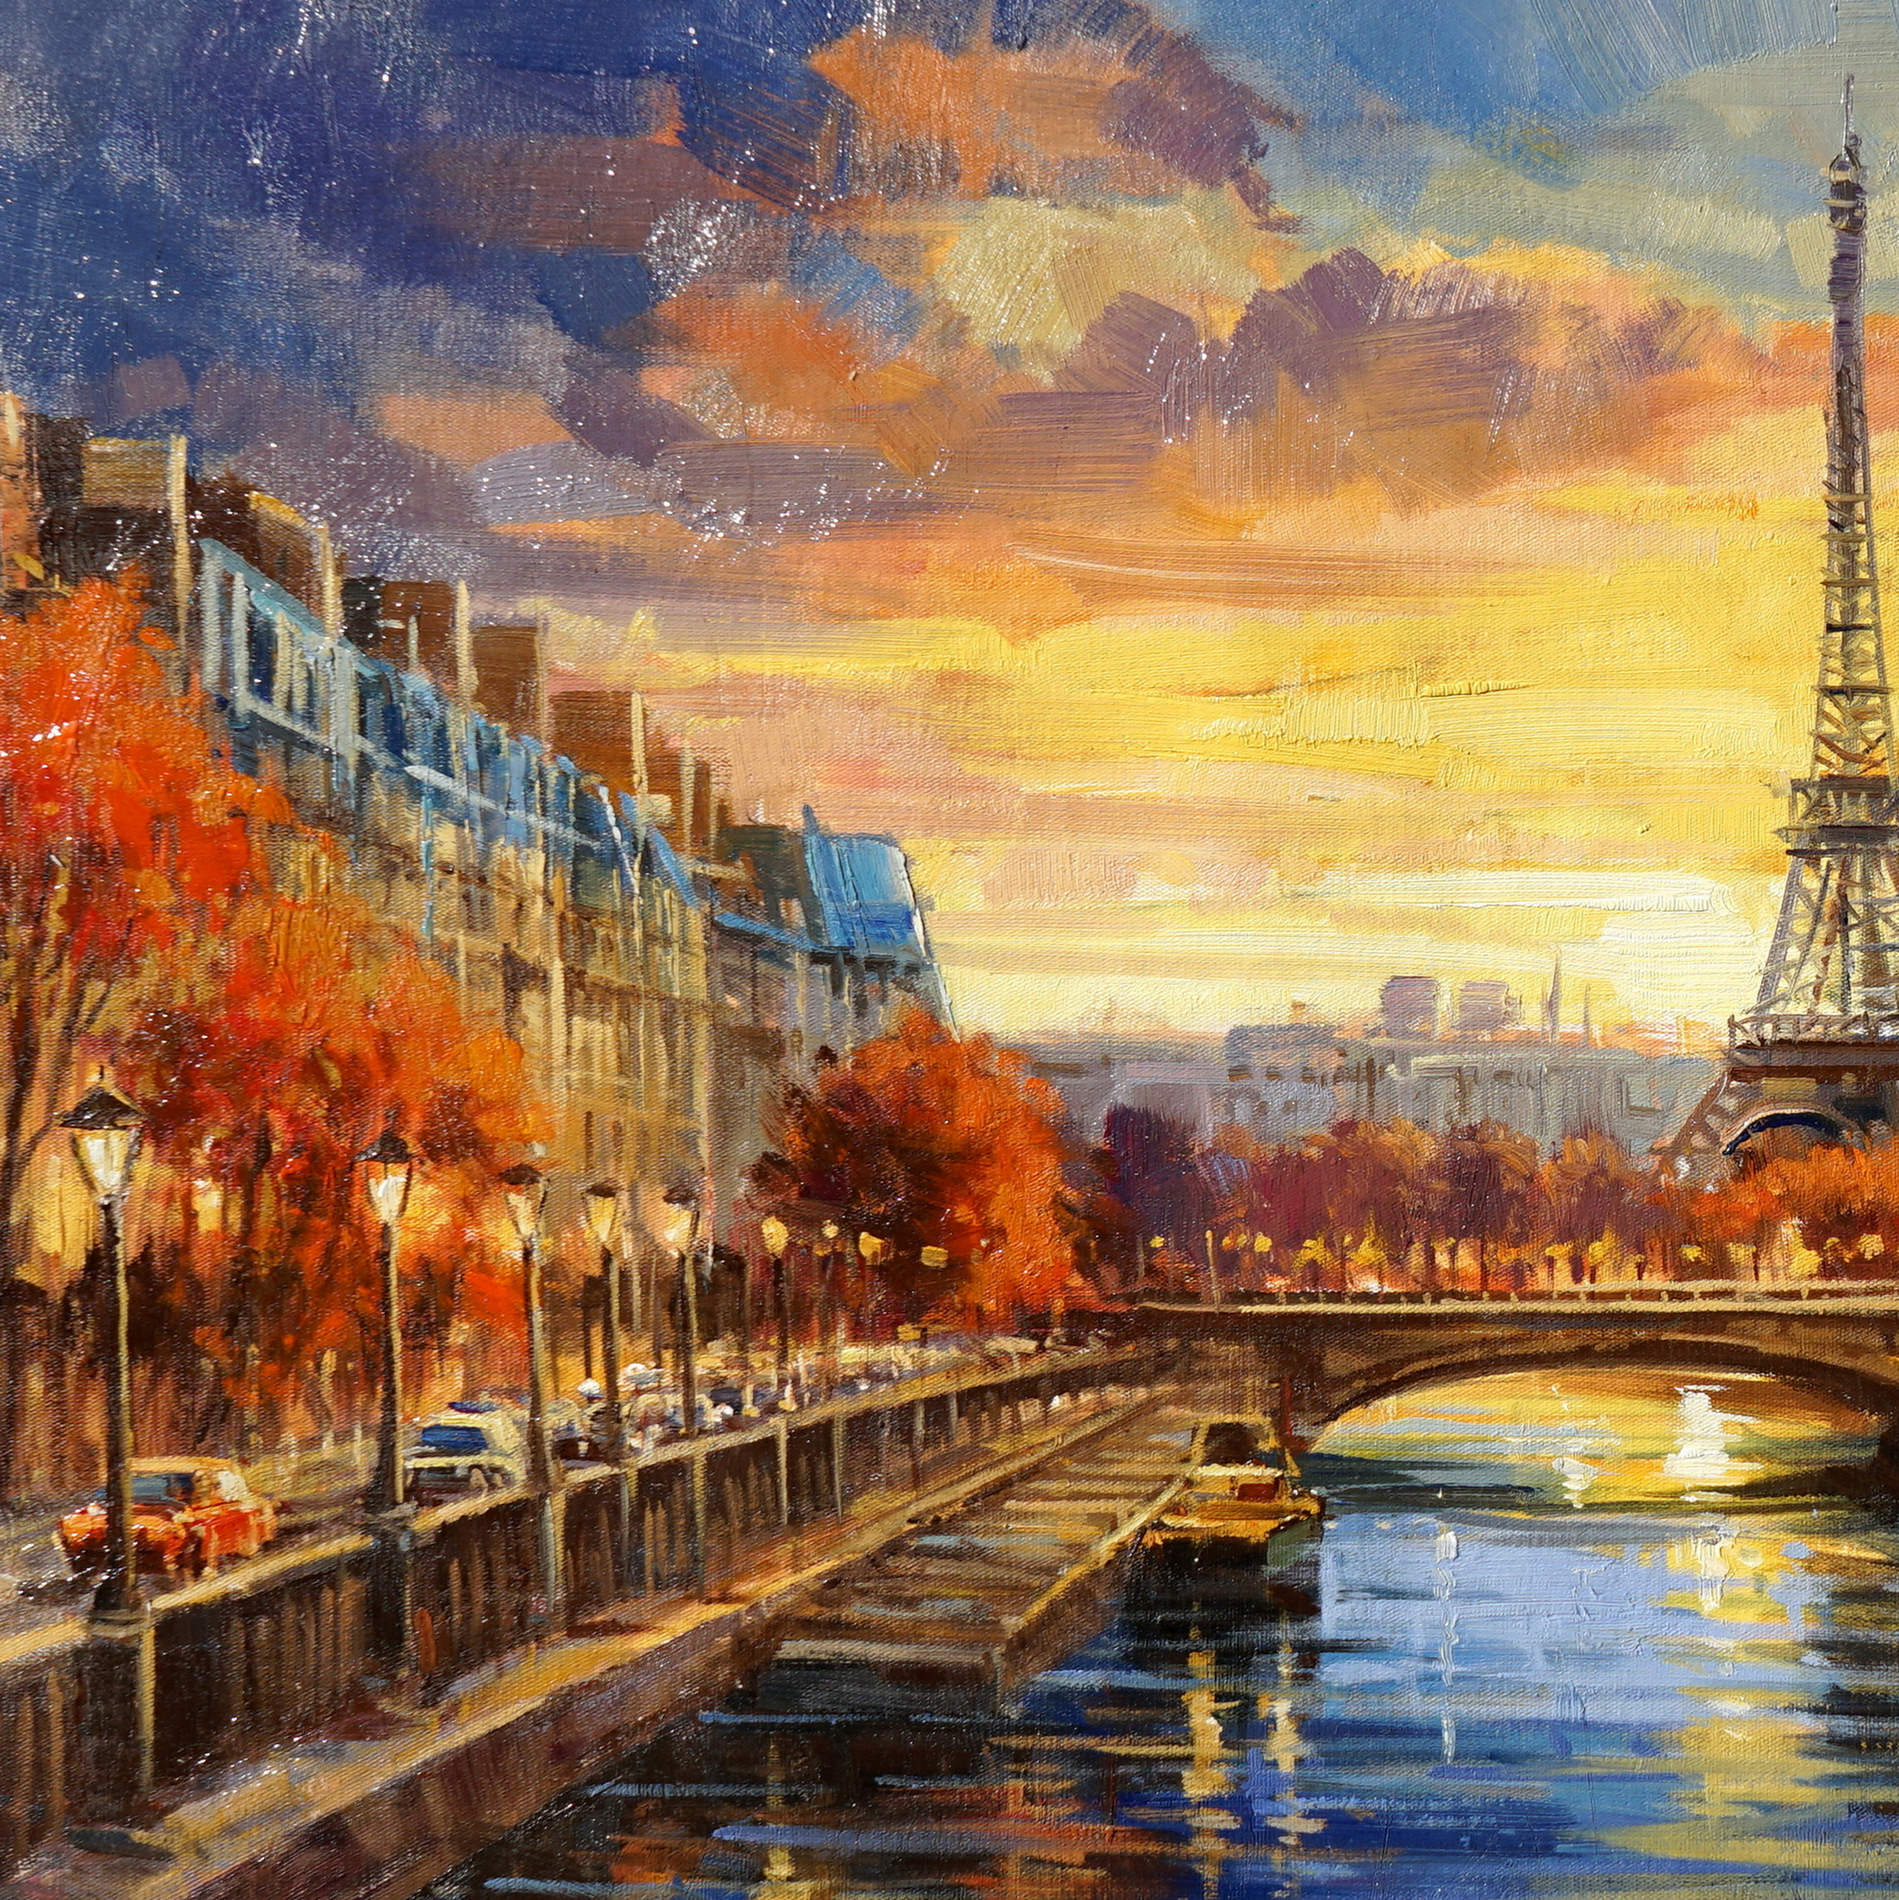 Hand painted Paris autumn Eiffel Tower 60x120cm